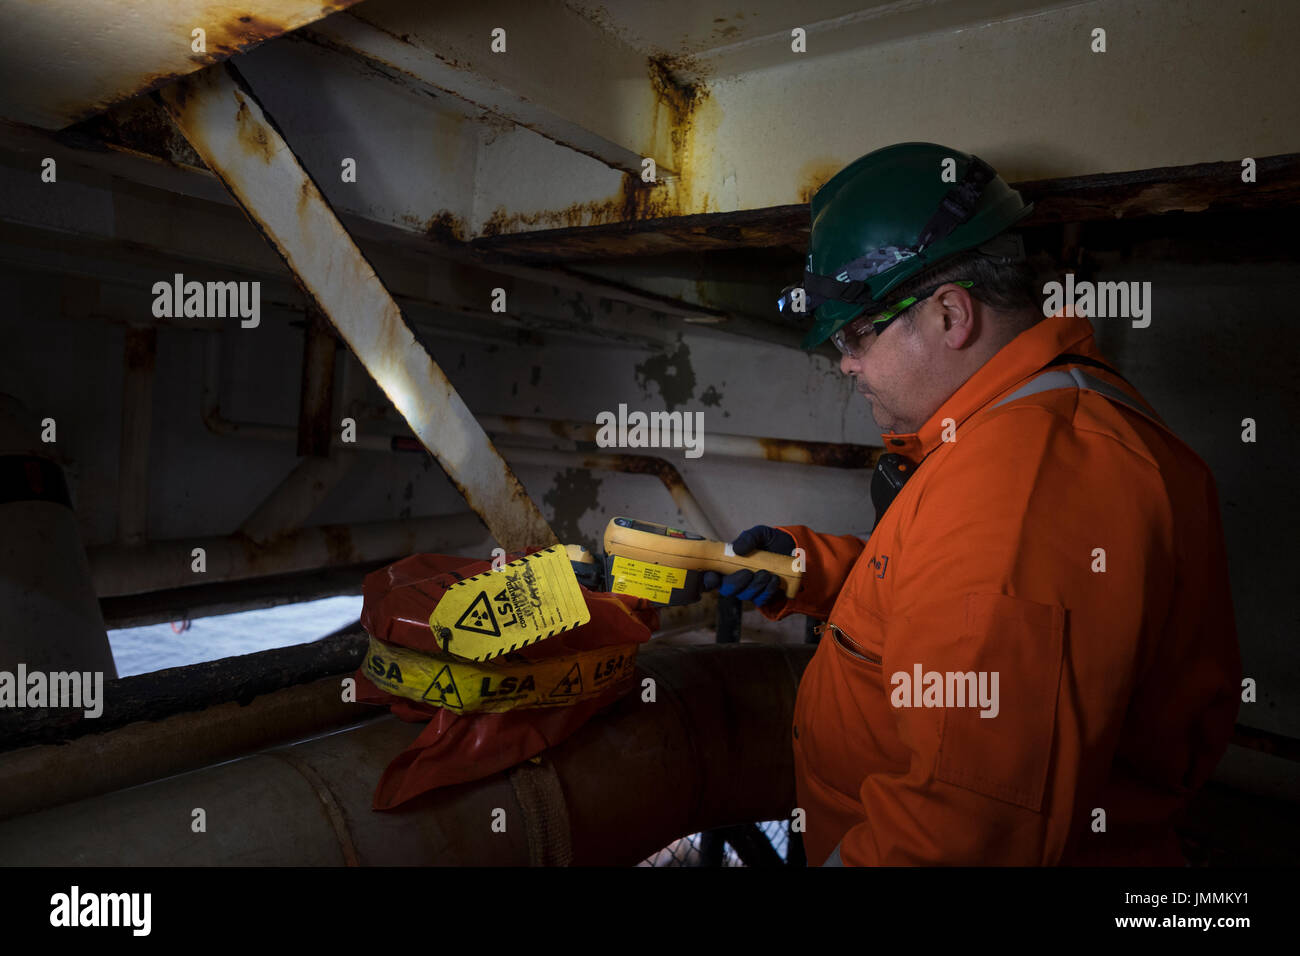 Imagen de un higienista industrial offshore pruebas de lsa / norma material radiactivo. en petróleo y gas del mar del Norte rig. Crédito: lee ramsden / alamy Foto de stock